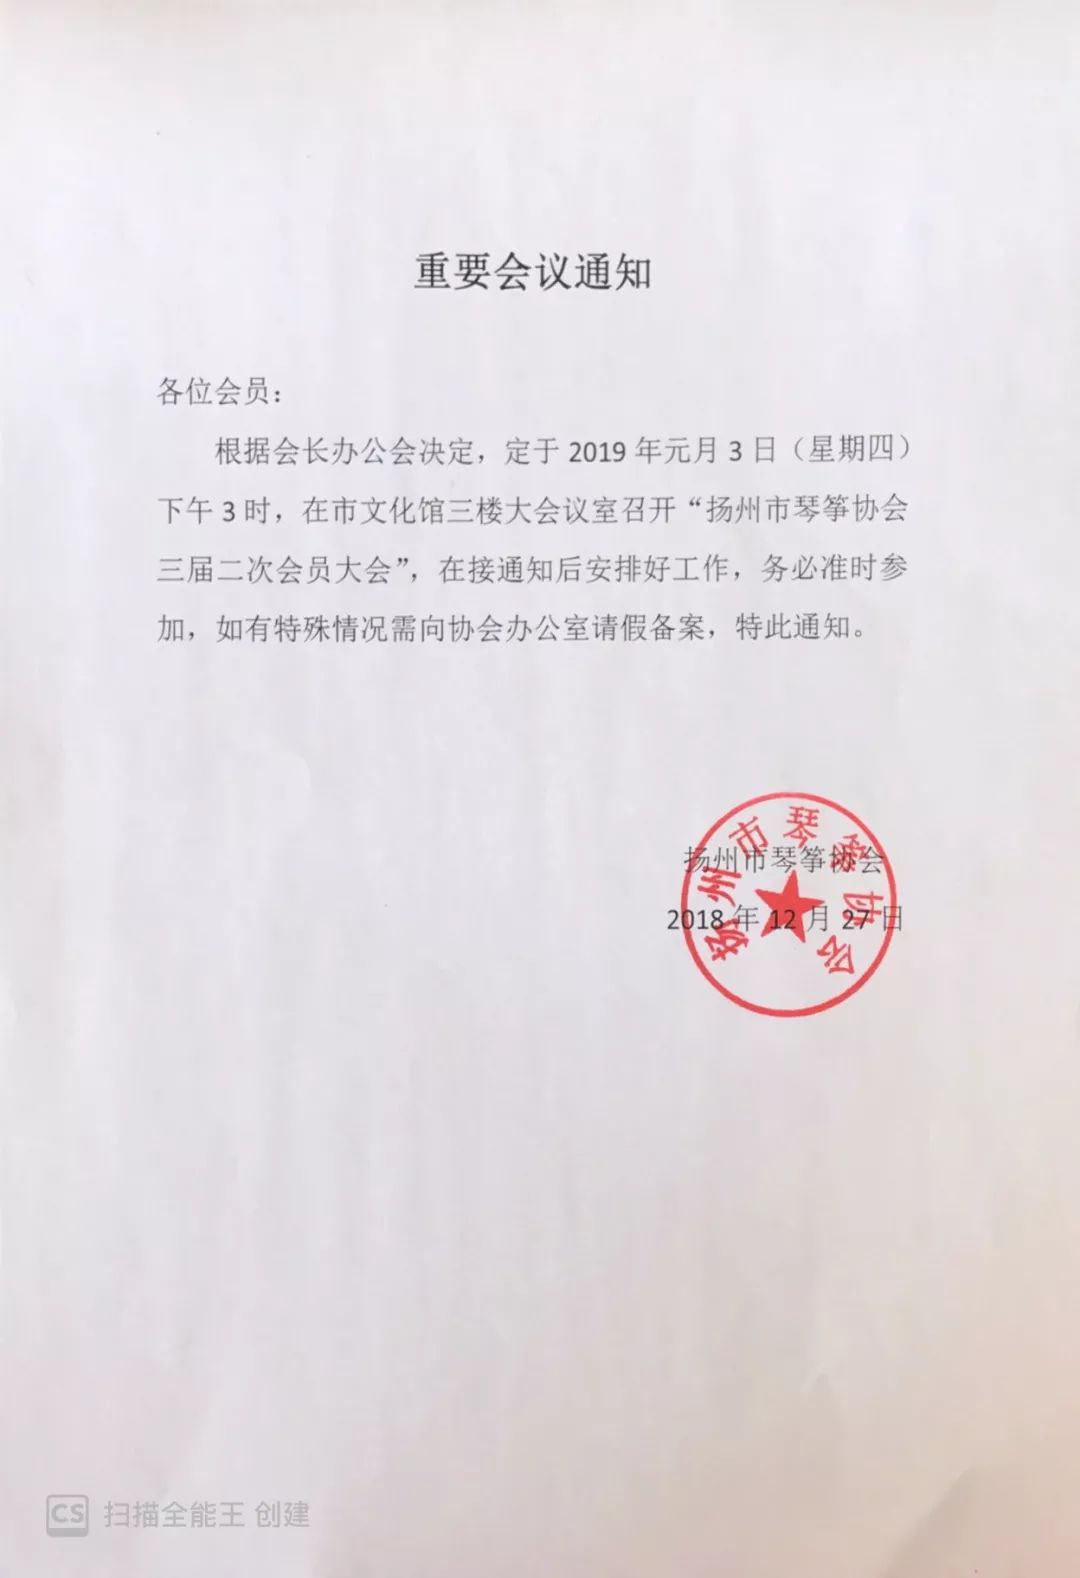 【会议通知】扬州市琴筝协会三届二次会员大会定于2019年元月3日(星期